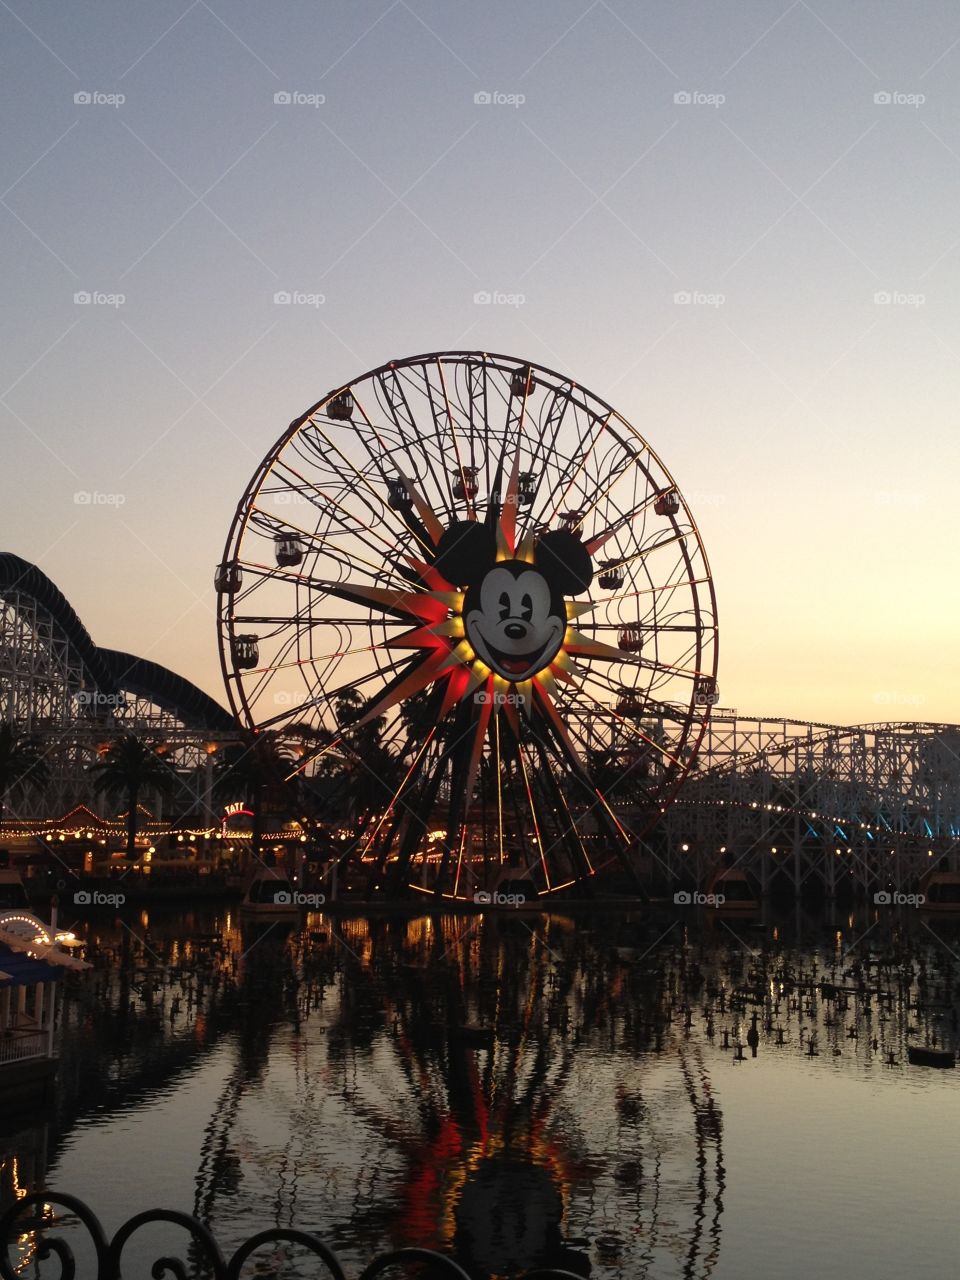 Mickey's Fun Wheel